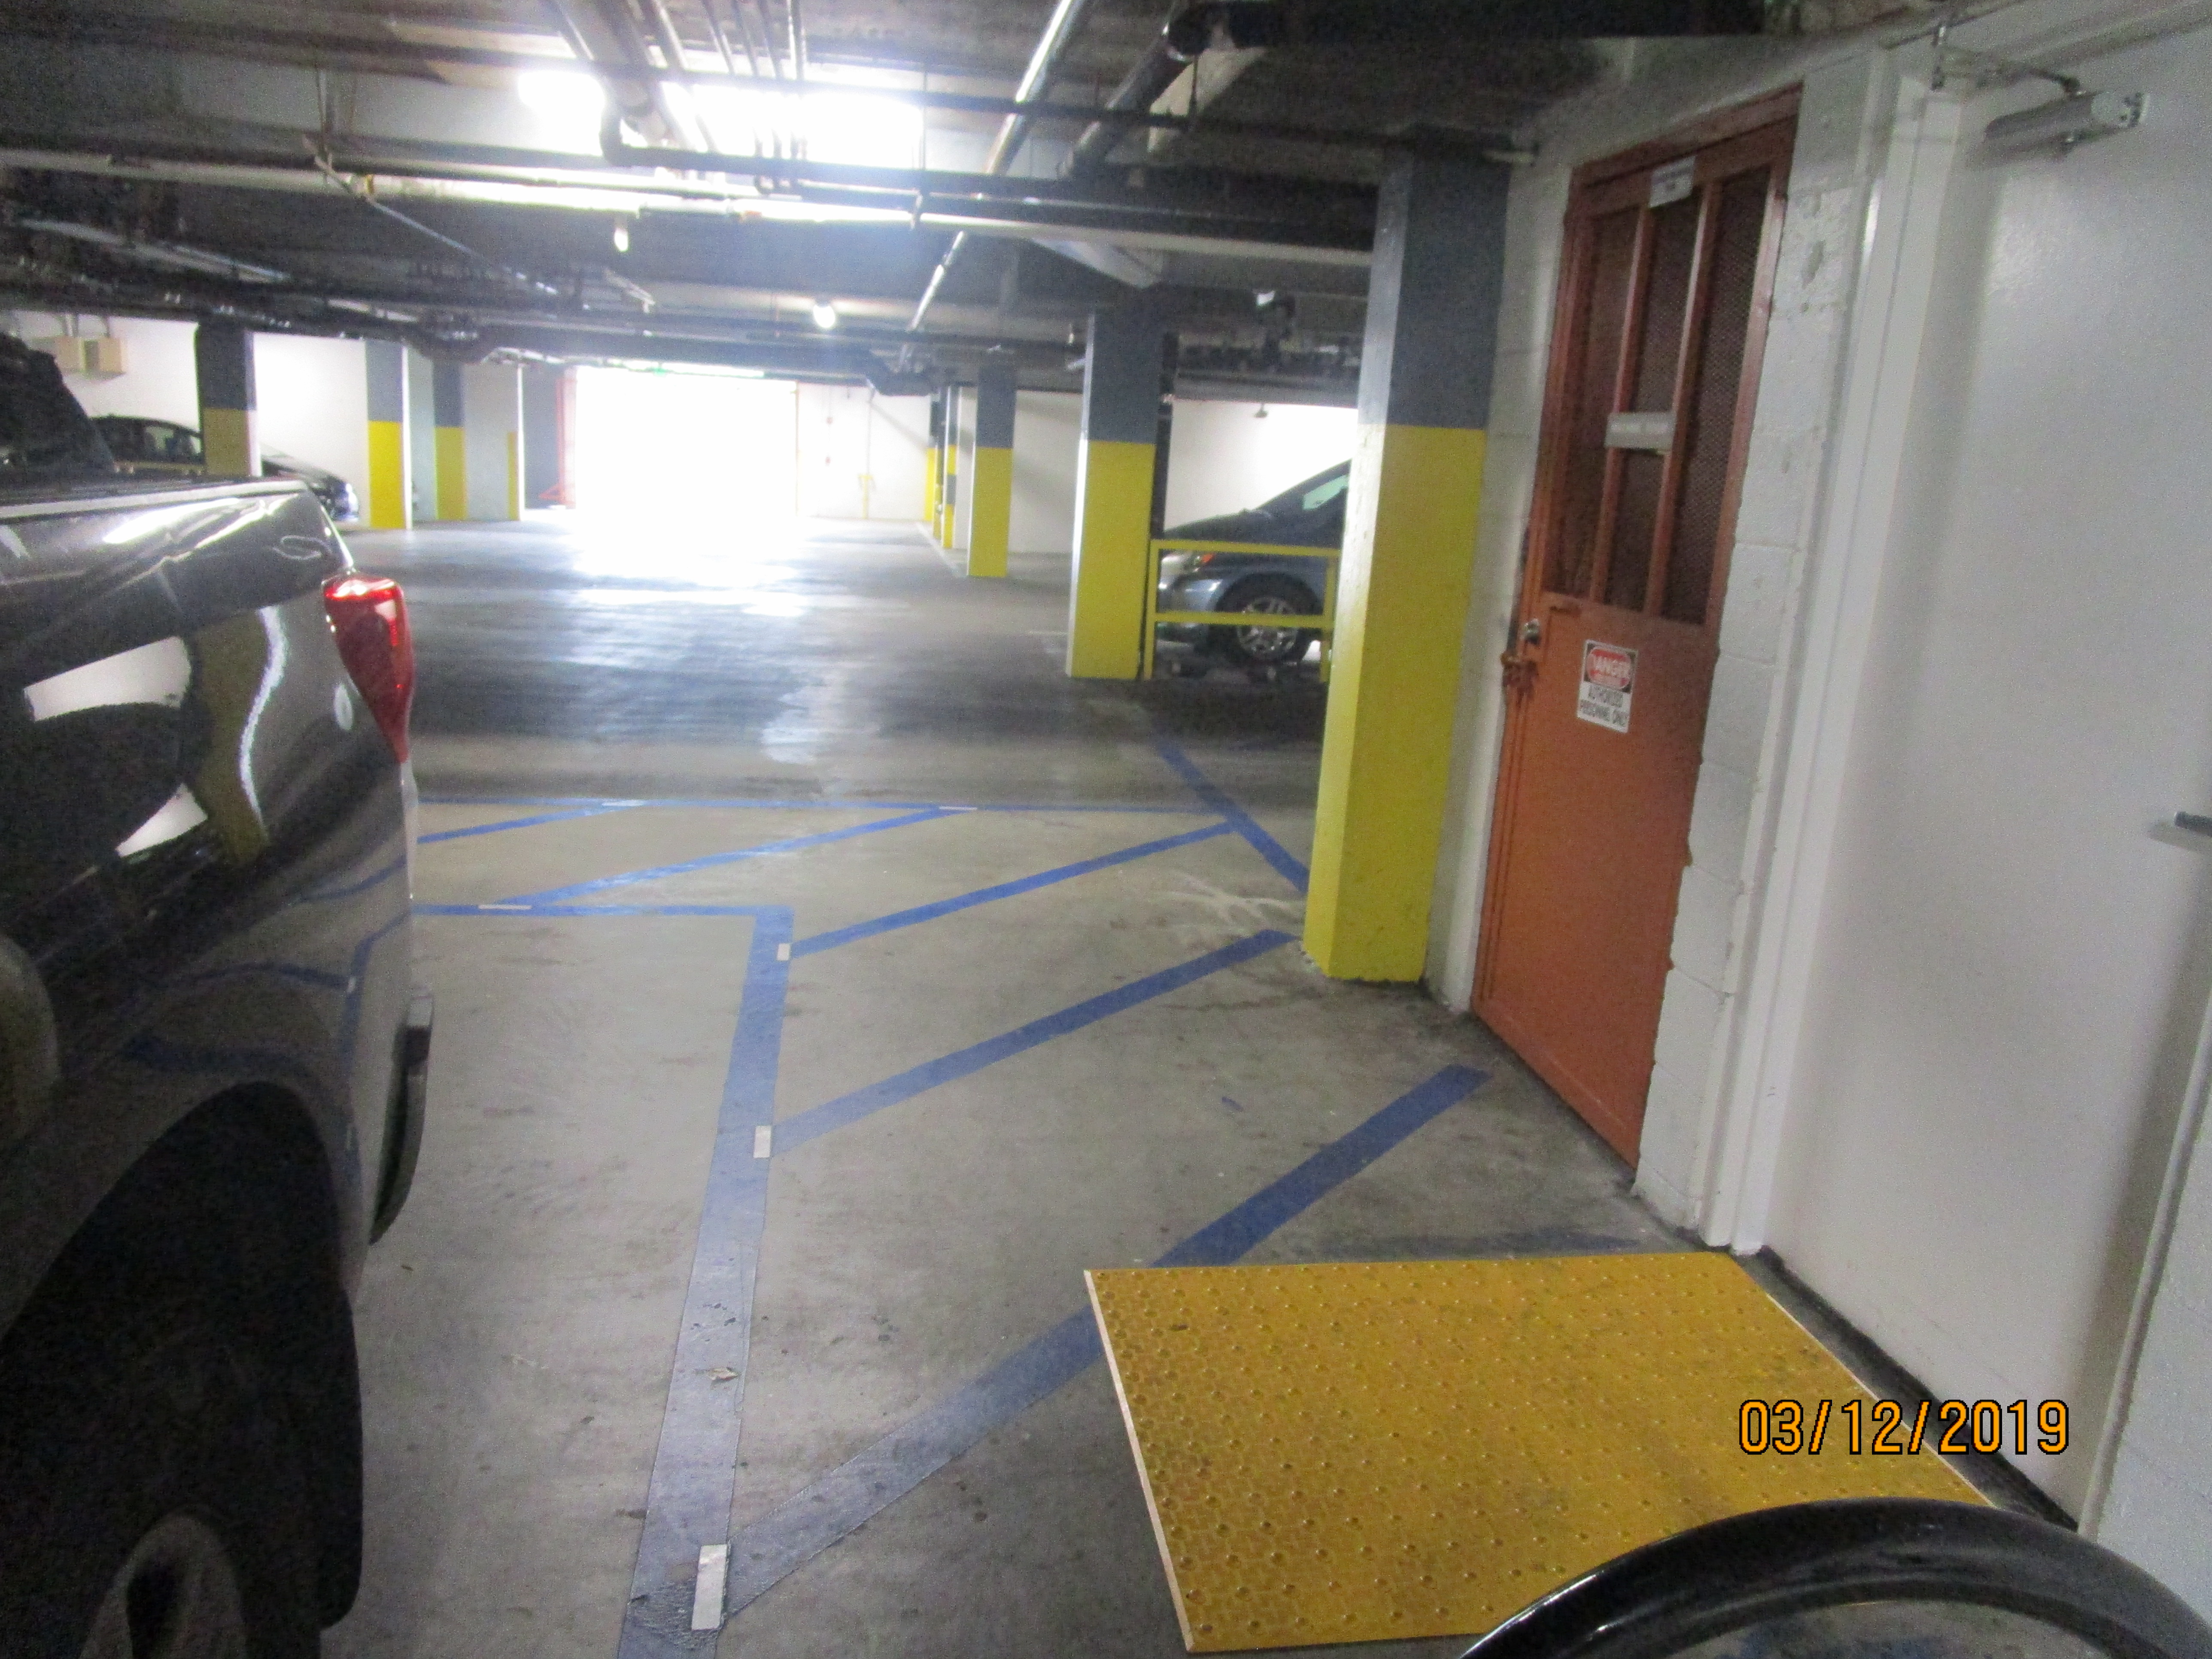 Vies of an underground garage, parked cars.